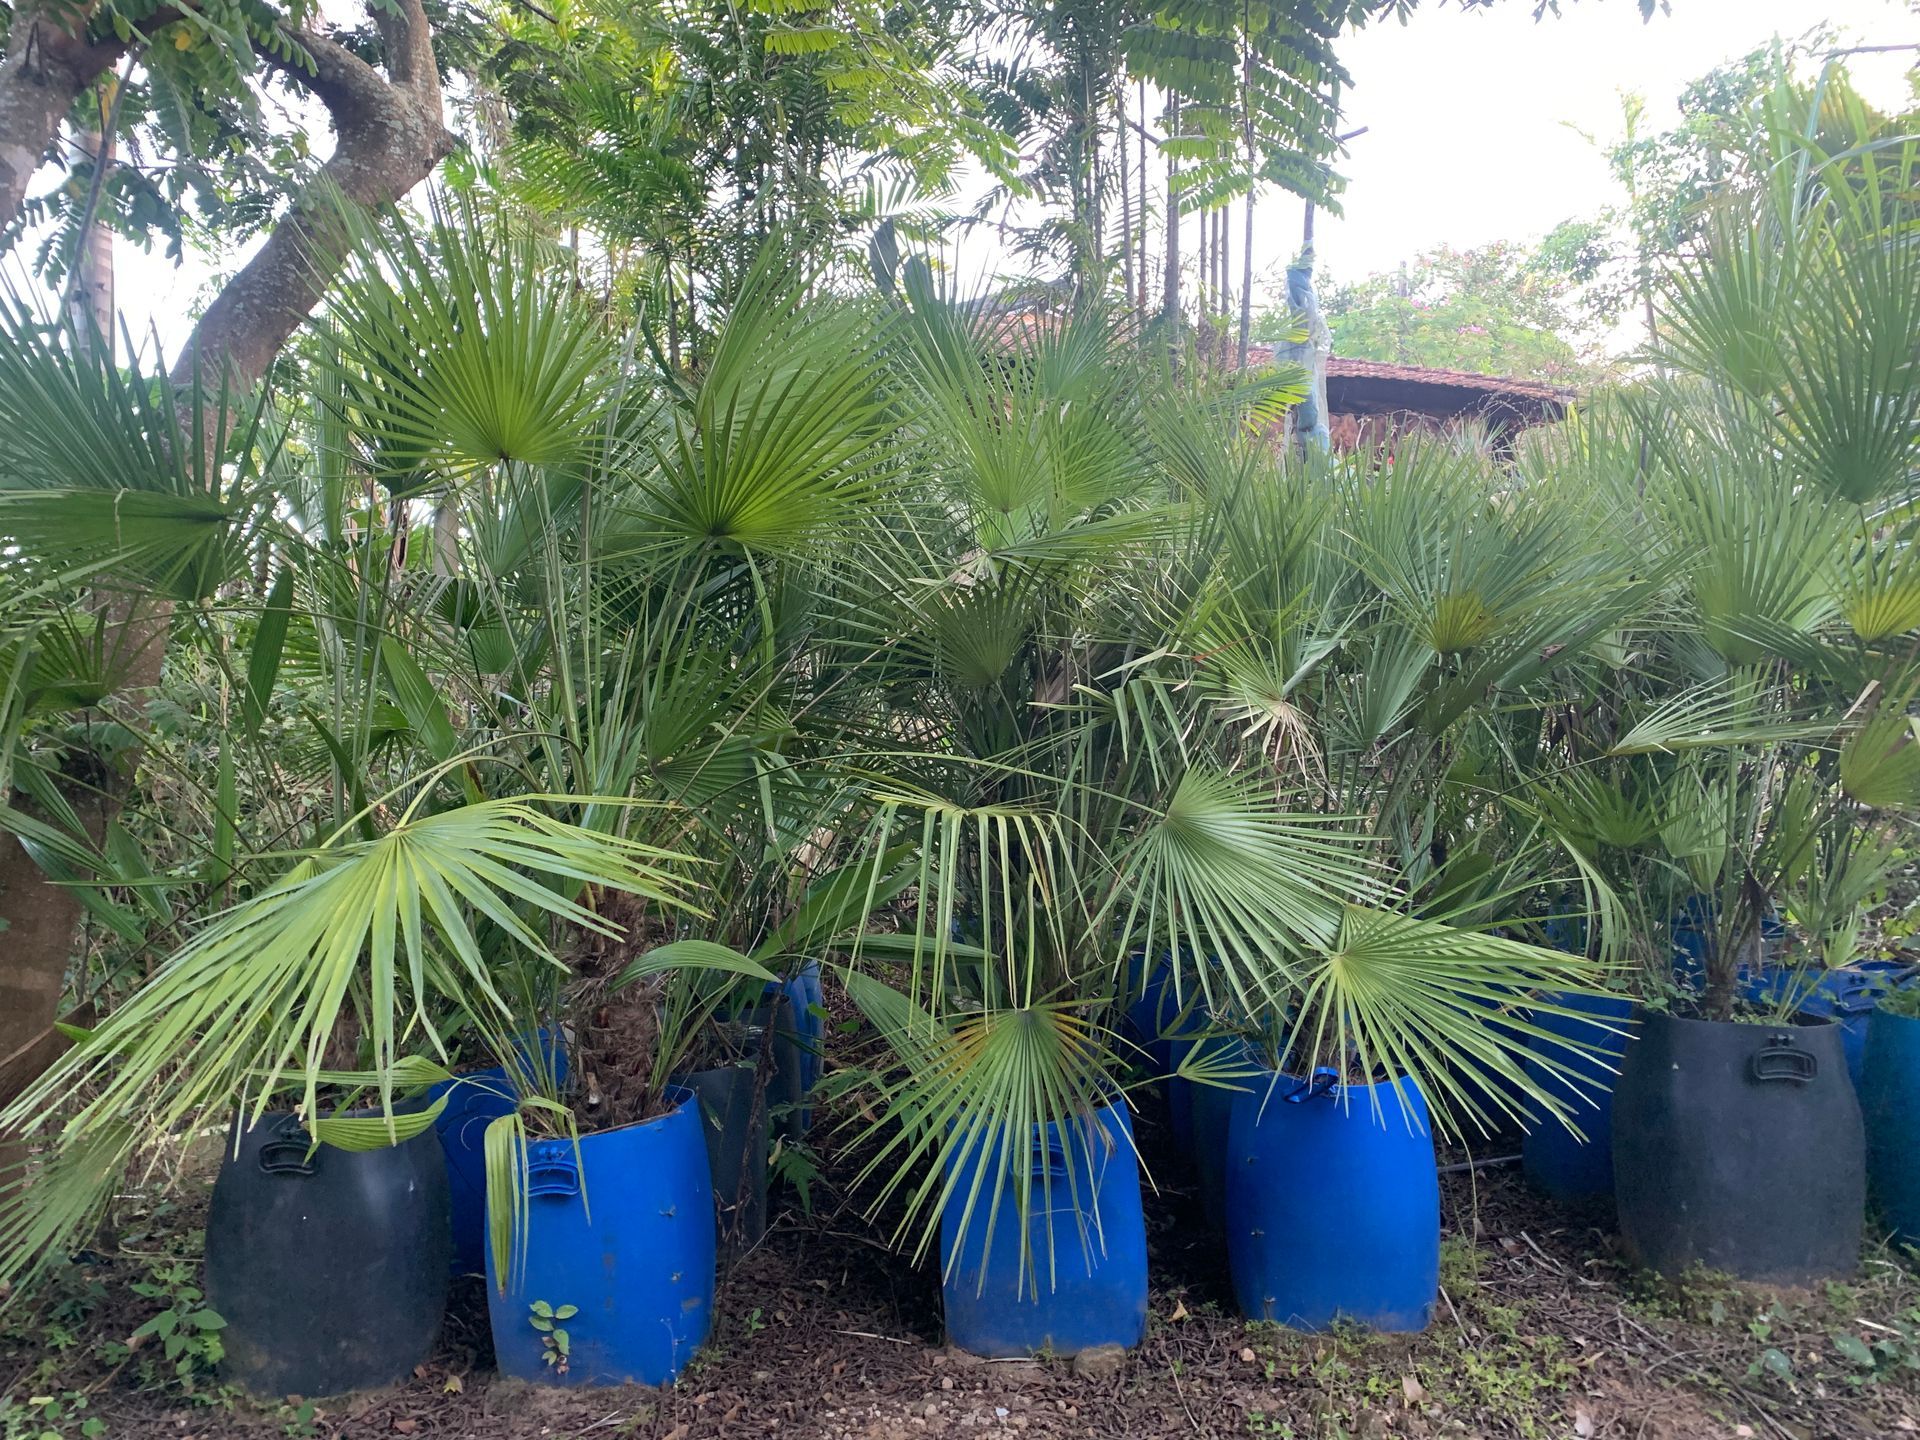 Comprar palmeira palmito espanhol online